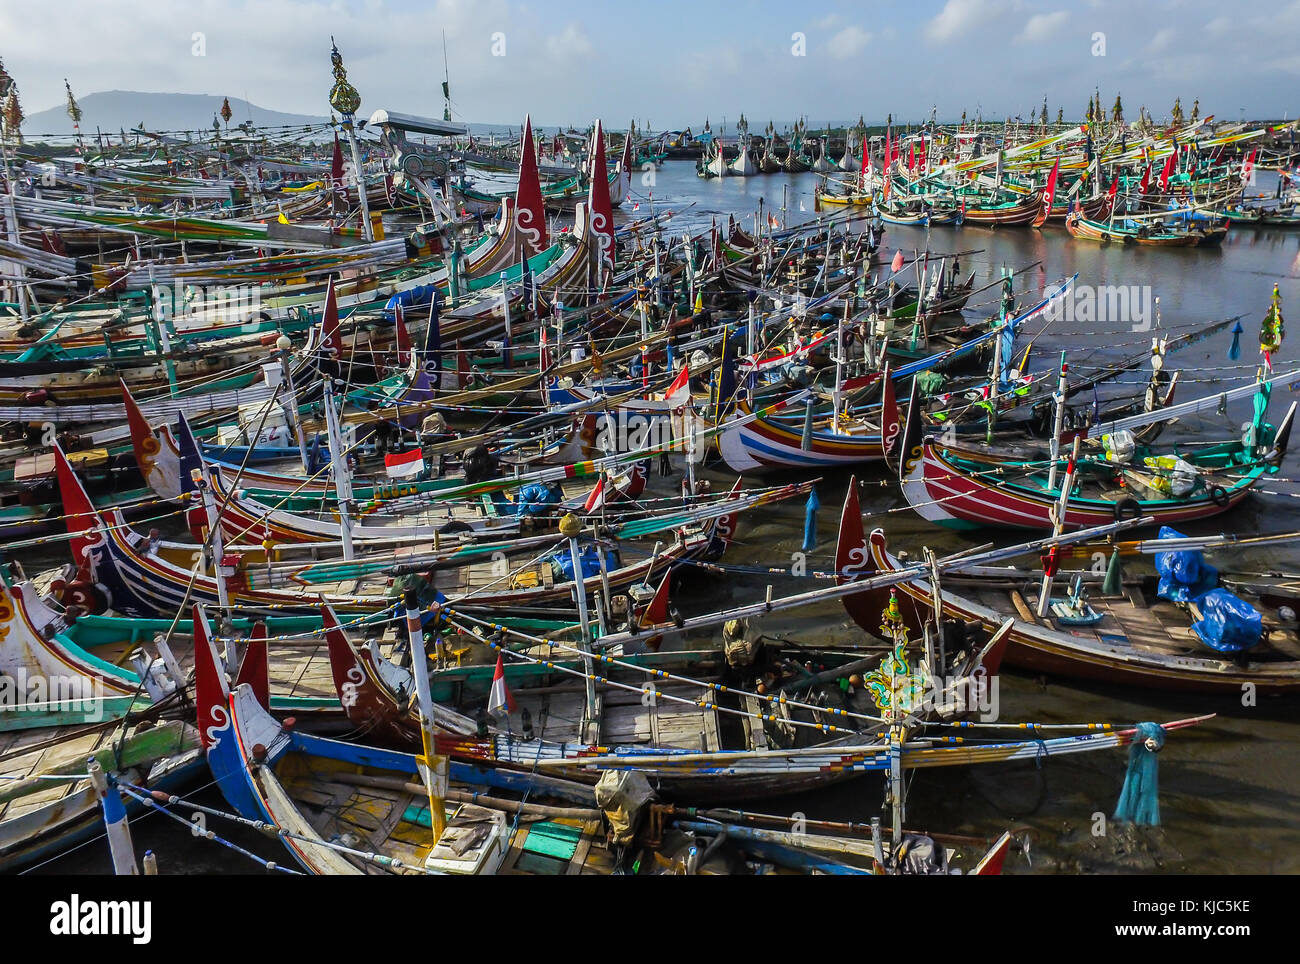 Bateau de pêche traditionnel dans le port de muncar muncar en banyuwangi. est l'un des plus gros port de pêche de l'Asie du sud et l'Indonésie. Banque D'Images